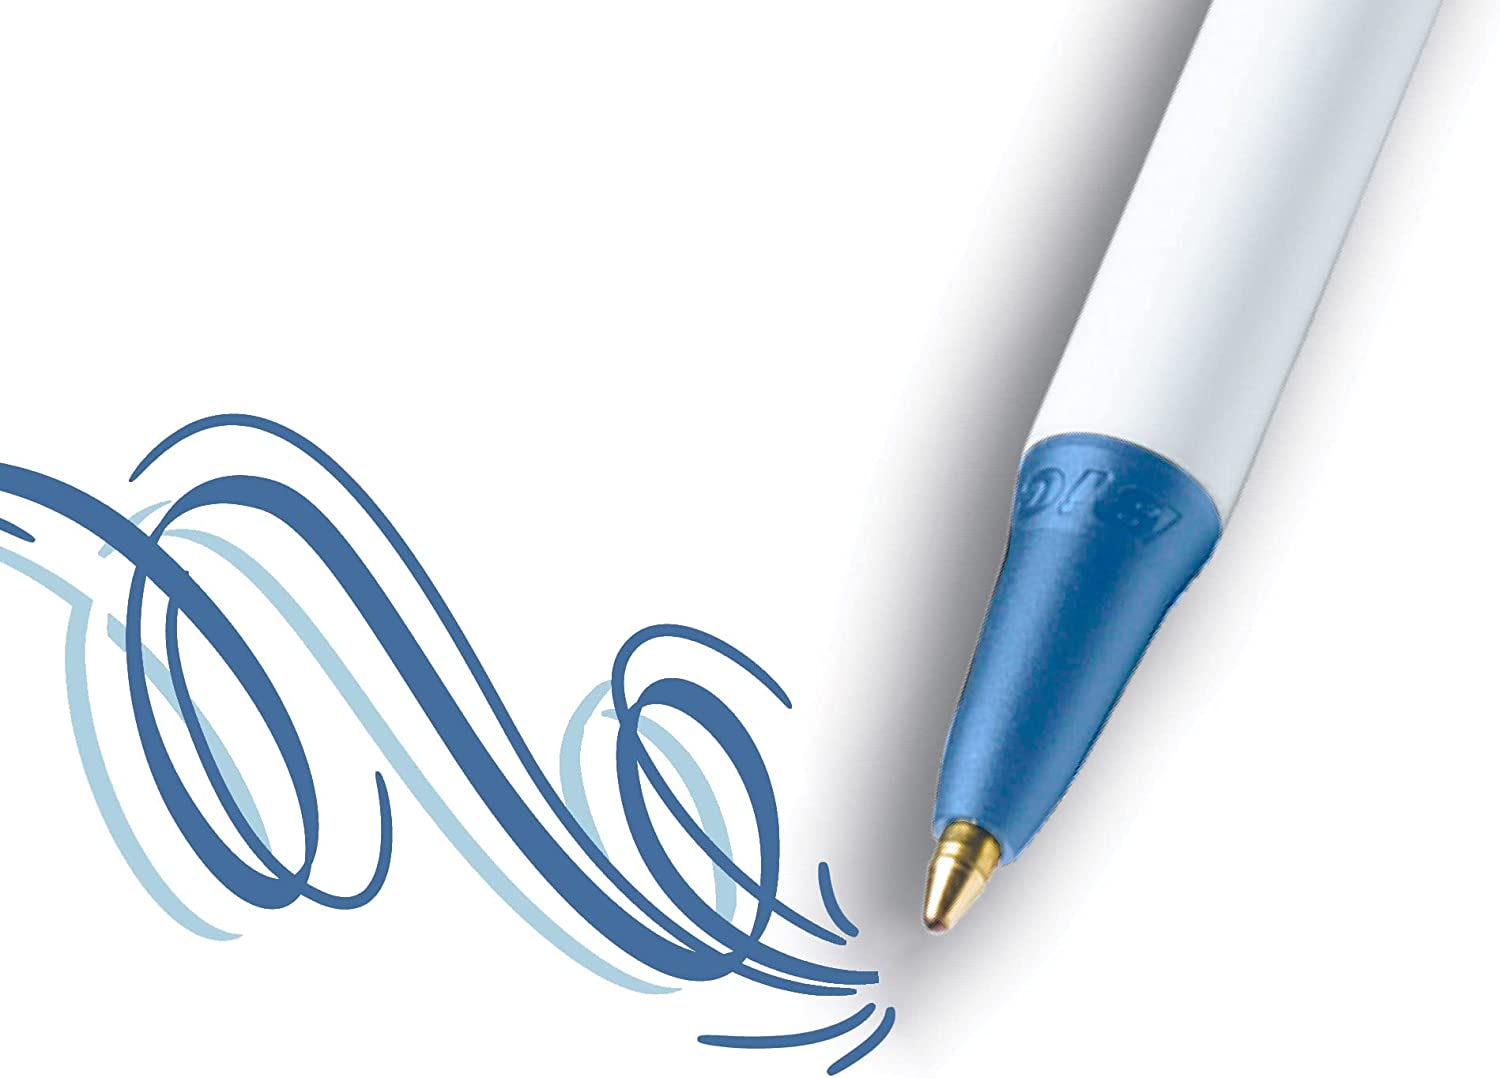 Bút bi gọn nhẹ, ngòi êm Bic Clic Stic Retractable Ball Pen, Cỡ ngòi 1.0mm, 1 cây viết màu xanh hoặc đen